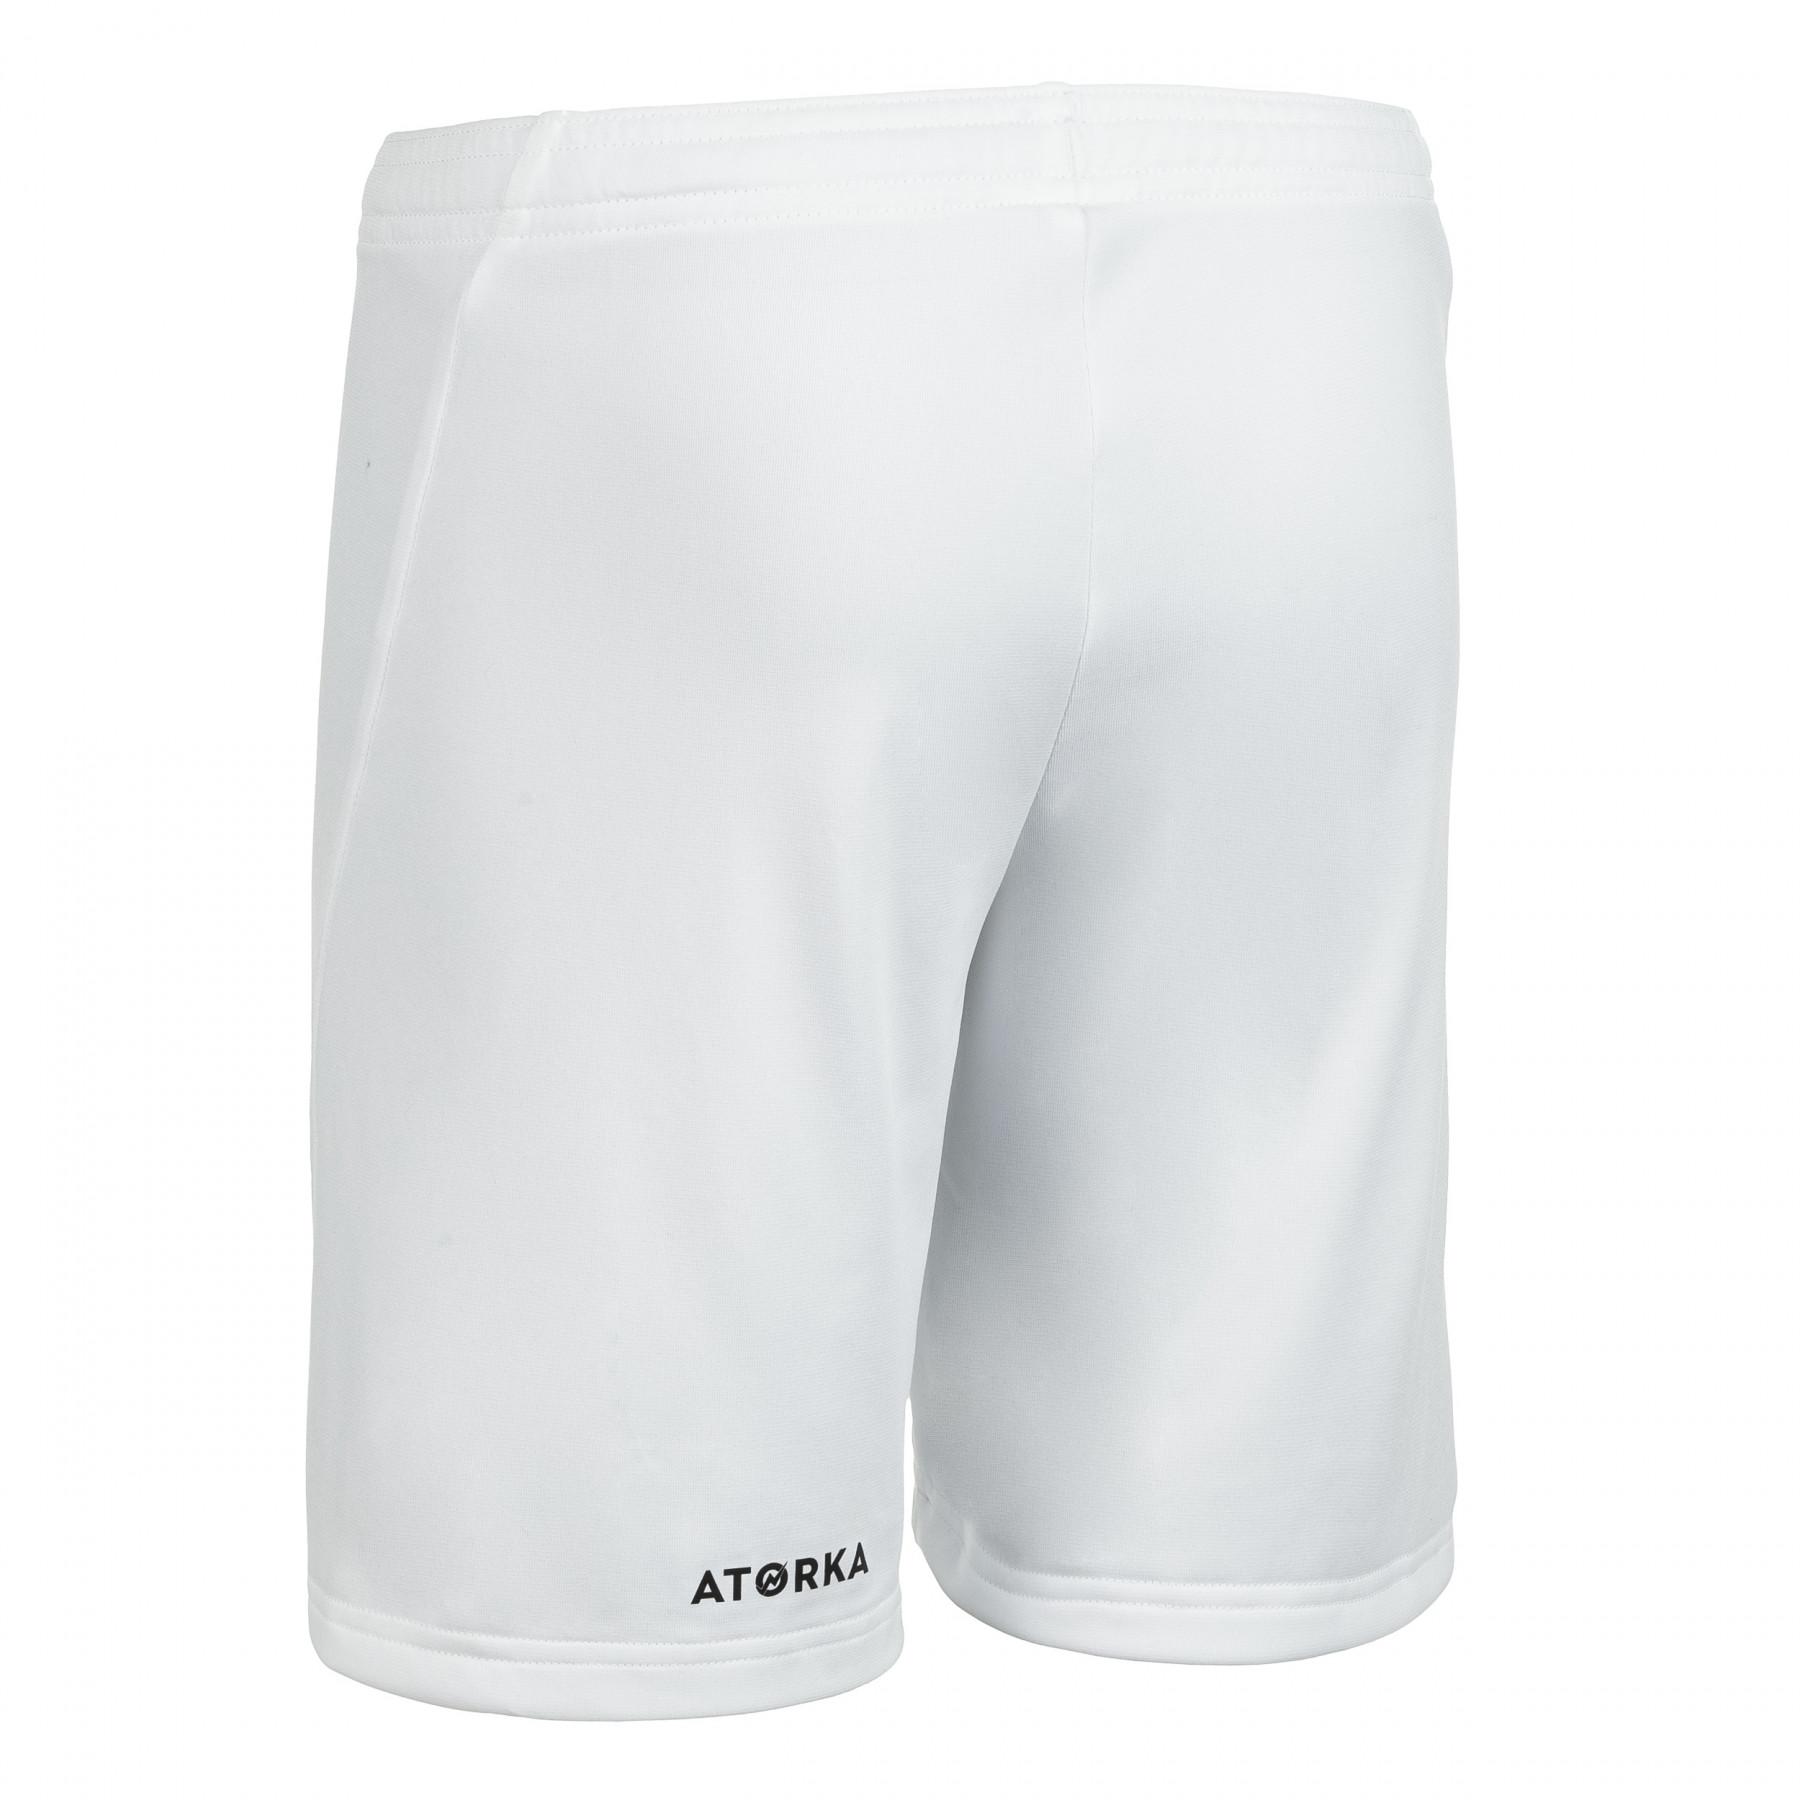 Pantalones cortos para niños Atorka H100C